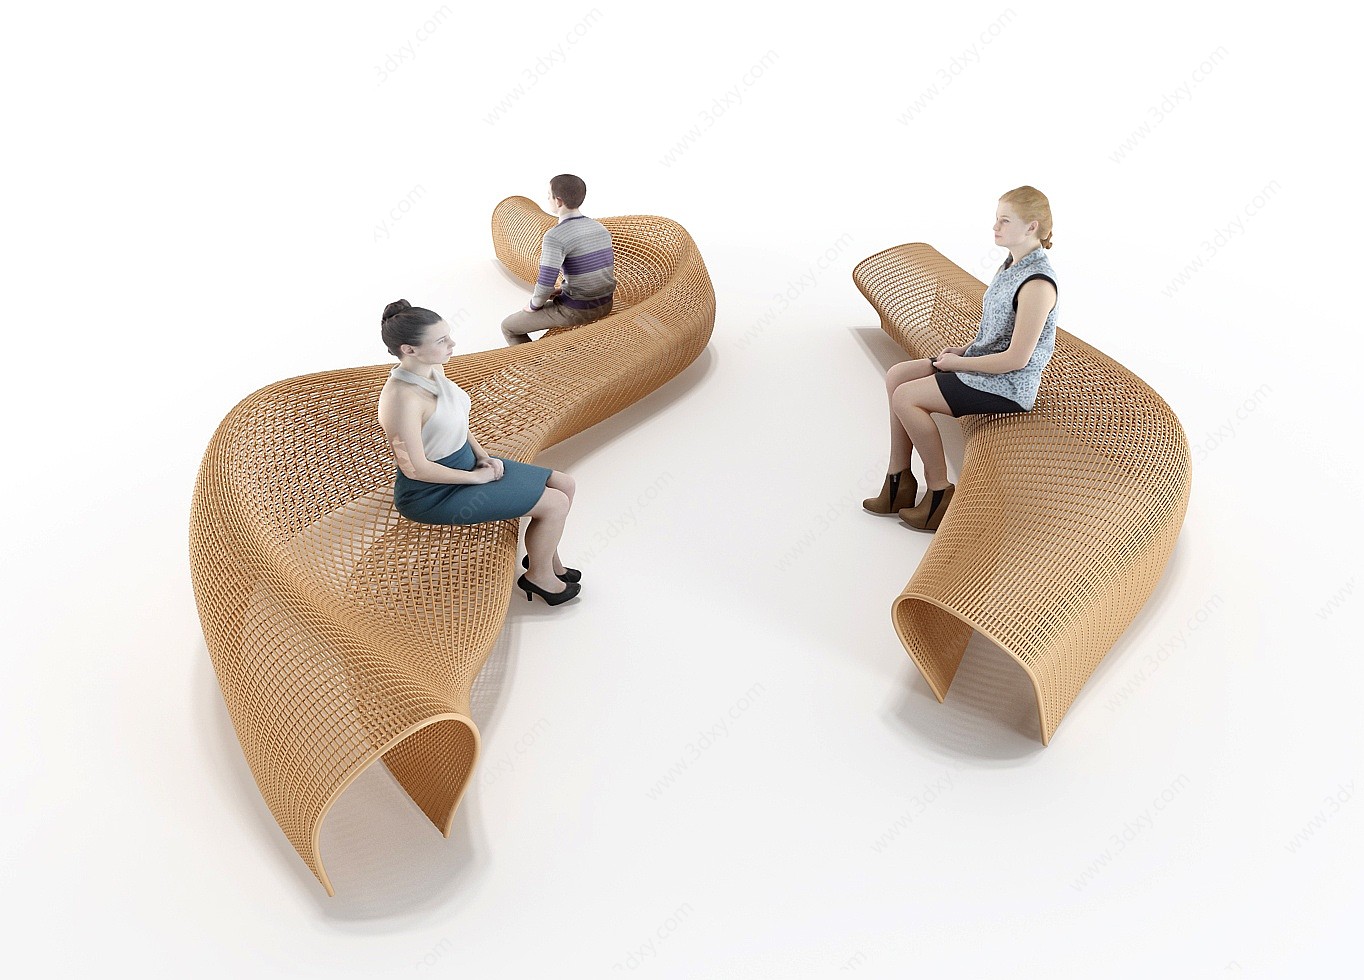 公共座椅休息等候座椅3D模型